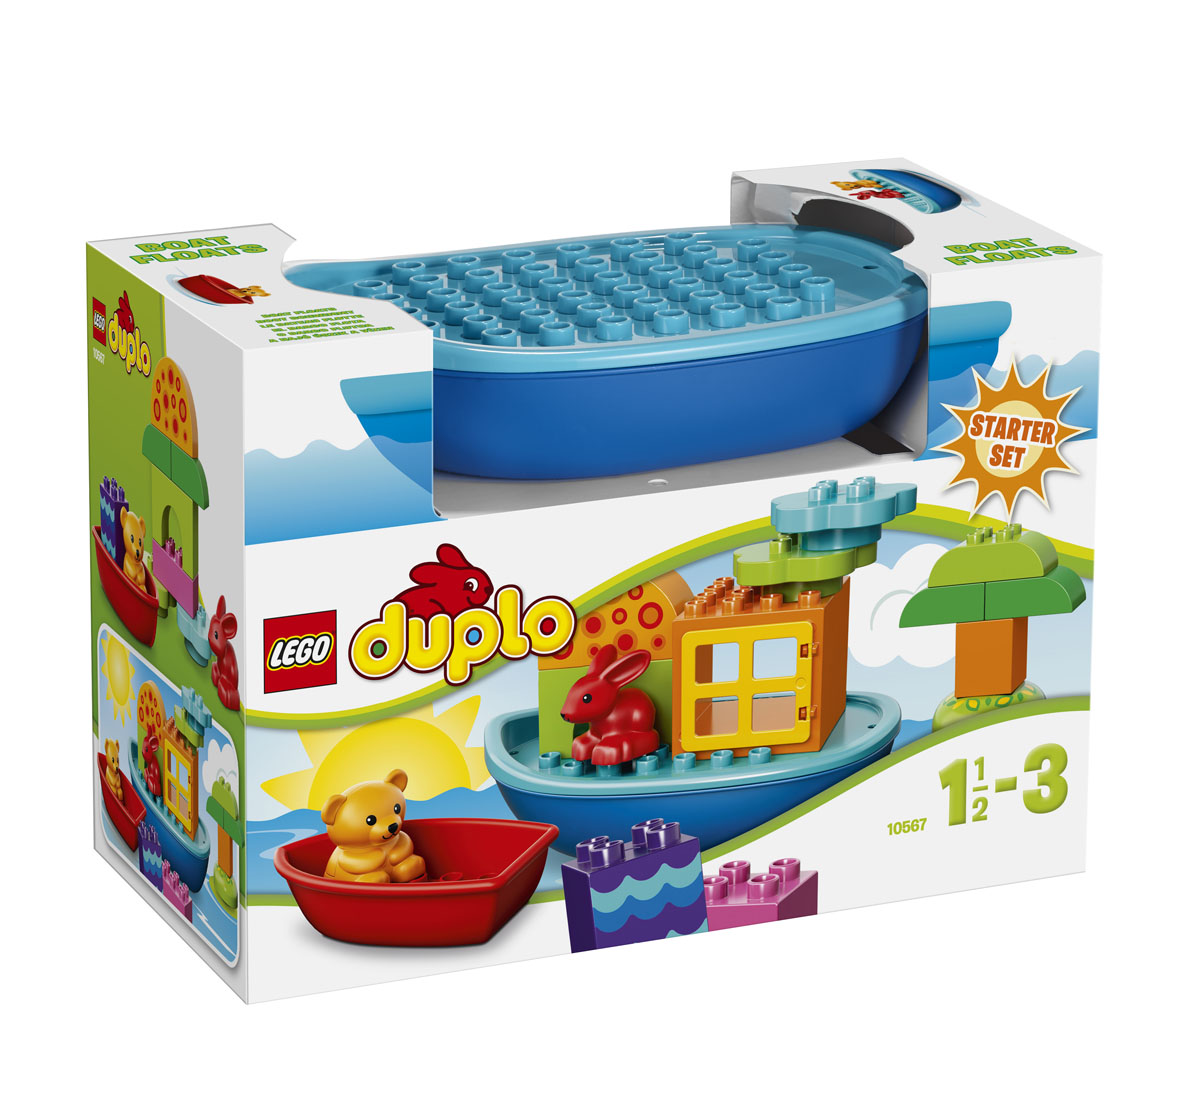 LEGO: Лодочка для малышей 10567 - купить детские товары 2013-2014 с доставкой в интернет магазине. Описание и цена lego: лодочка для малышей 10567, отзывы покупателей